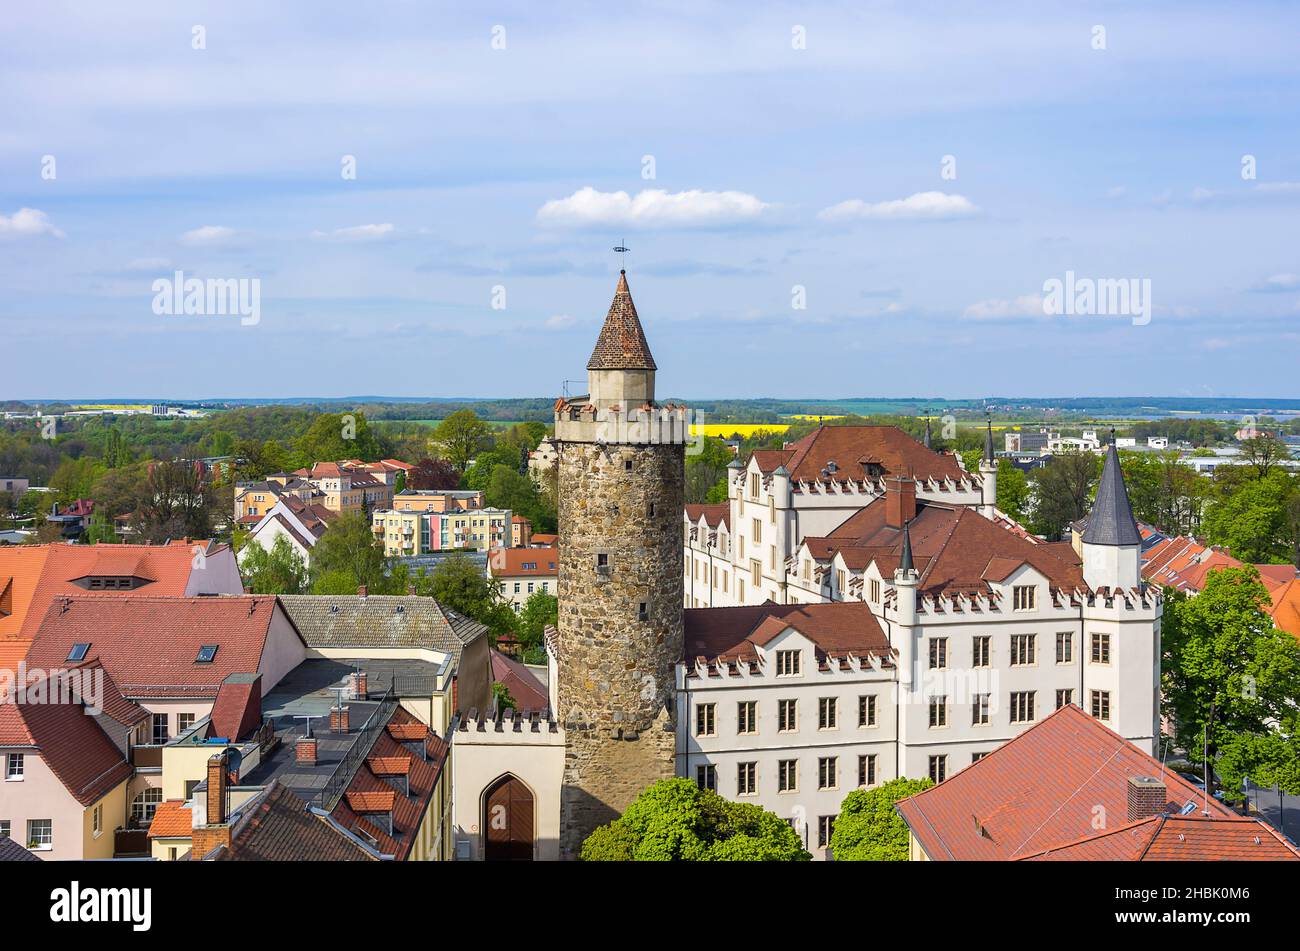 Der Wendische Turm und die Alte Kaserne Kaserne sind Teil der alten historischen Stadtbefestigung Bautzen, Oberlausitz, Sachsen, Deutschland. Stockfoto